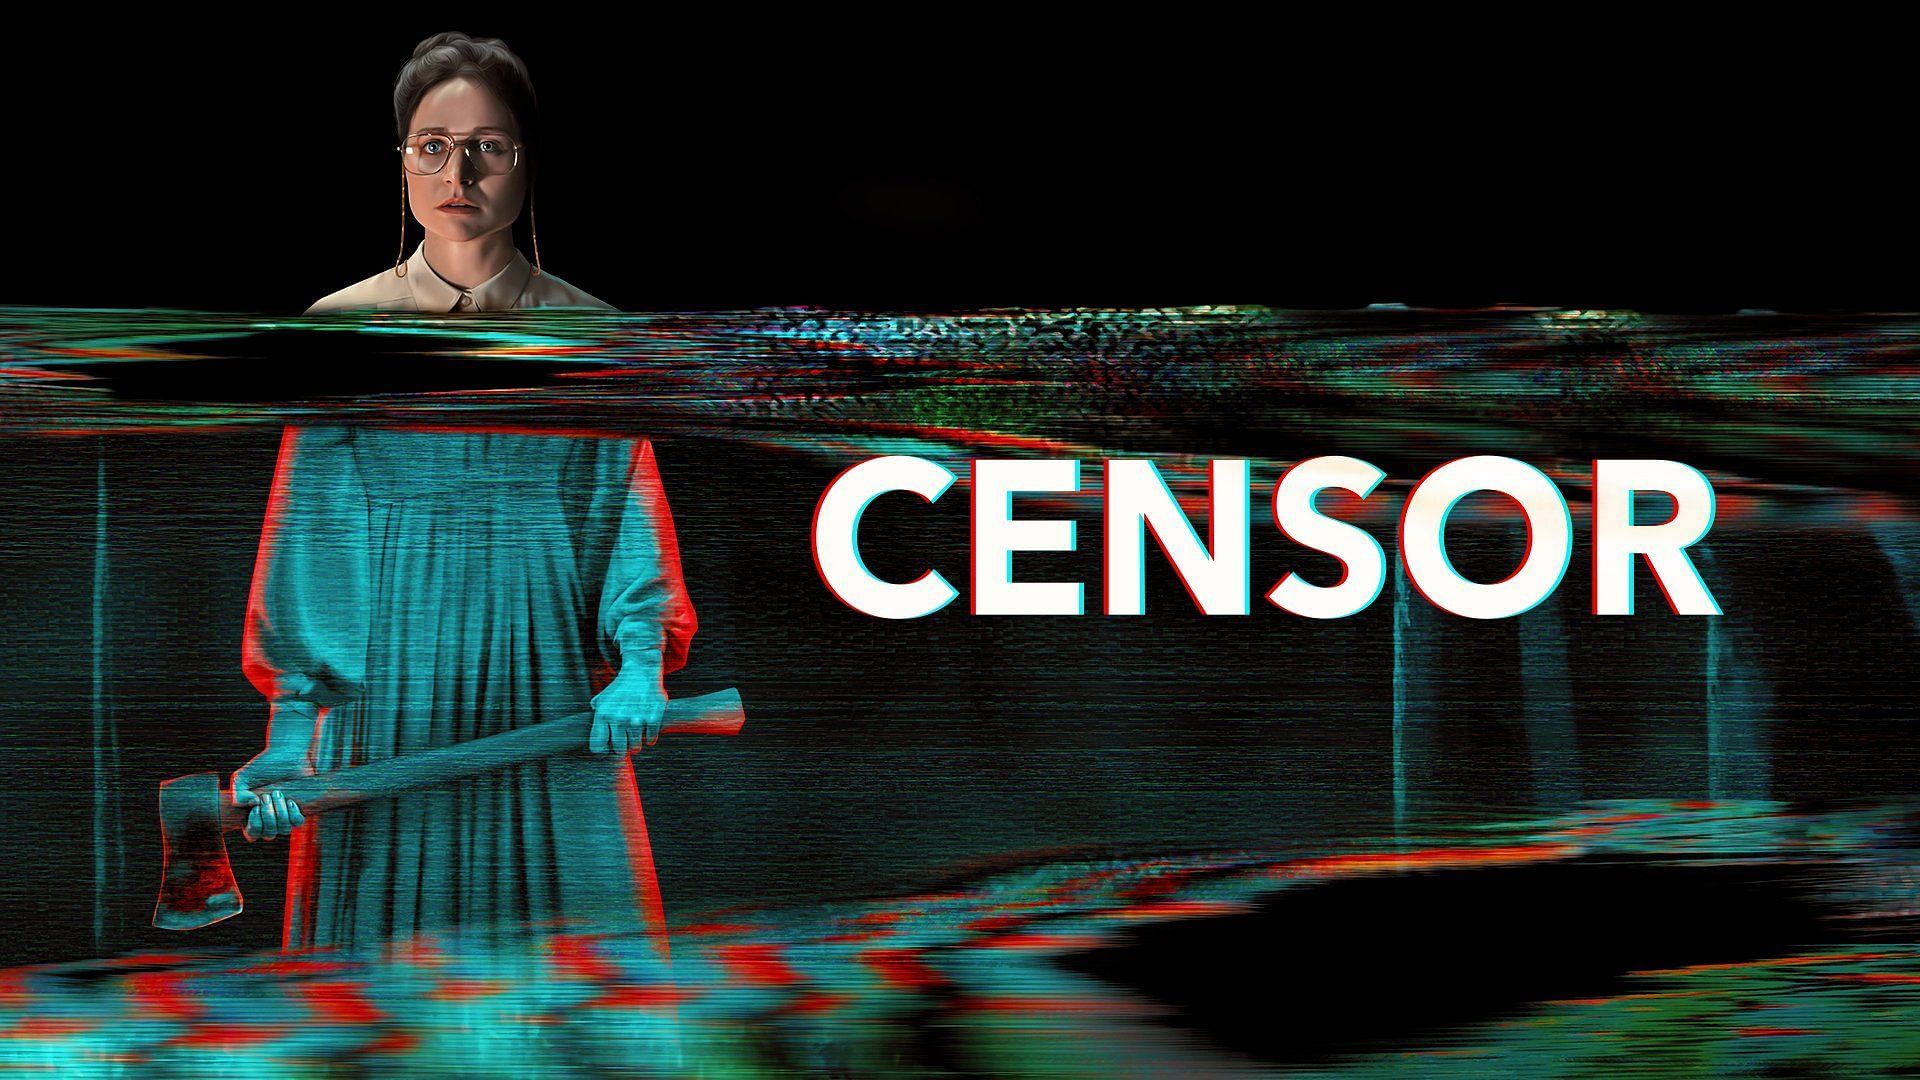 Censor (Image via Vertigo Releasing)